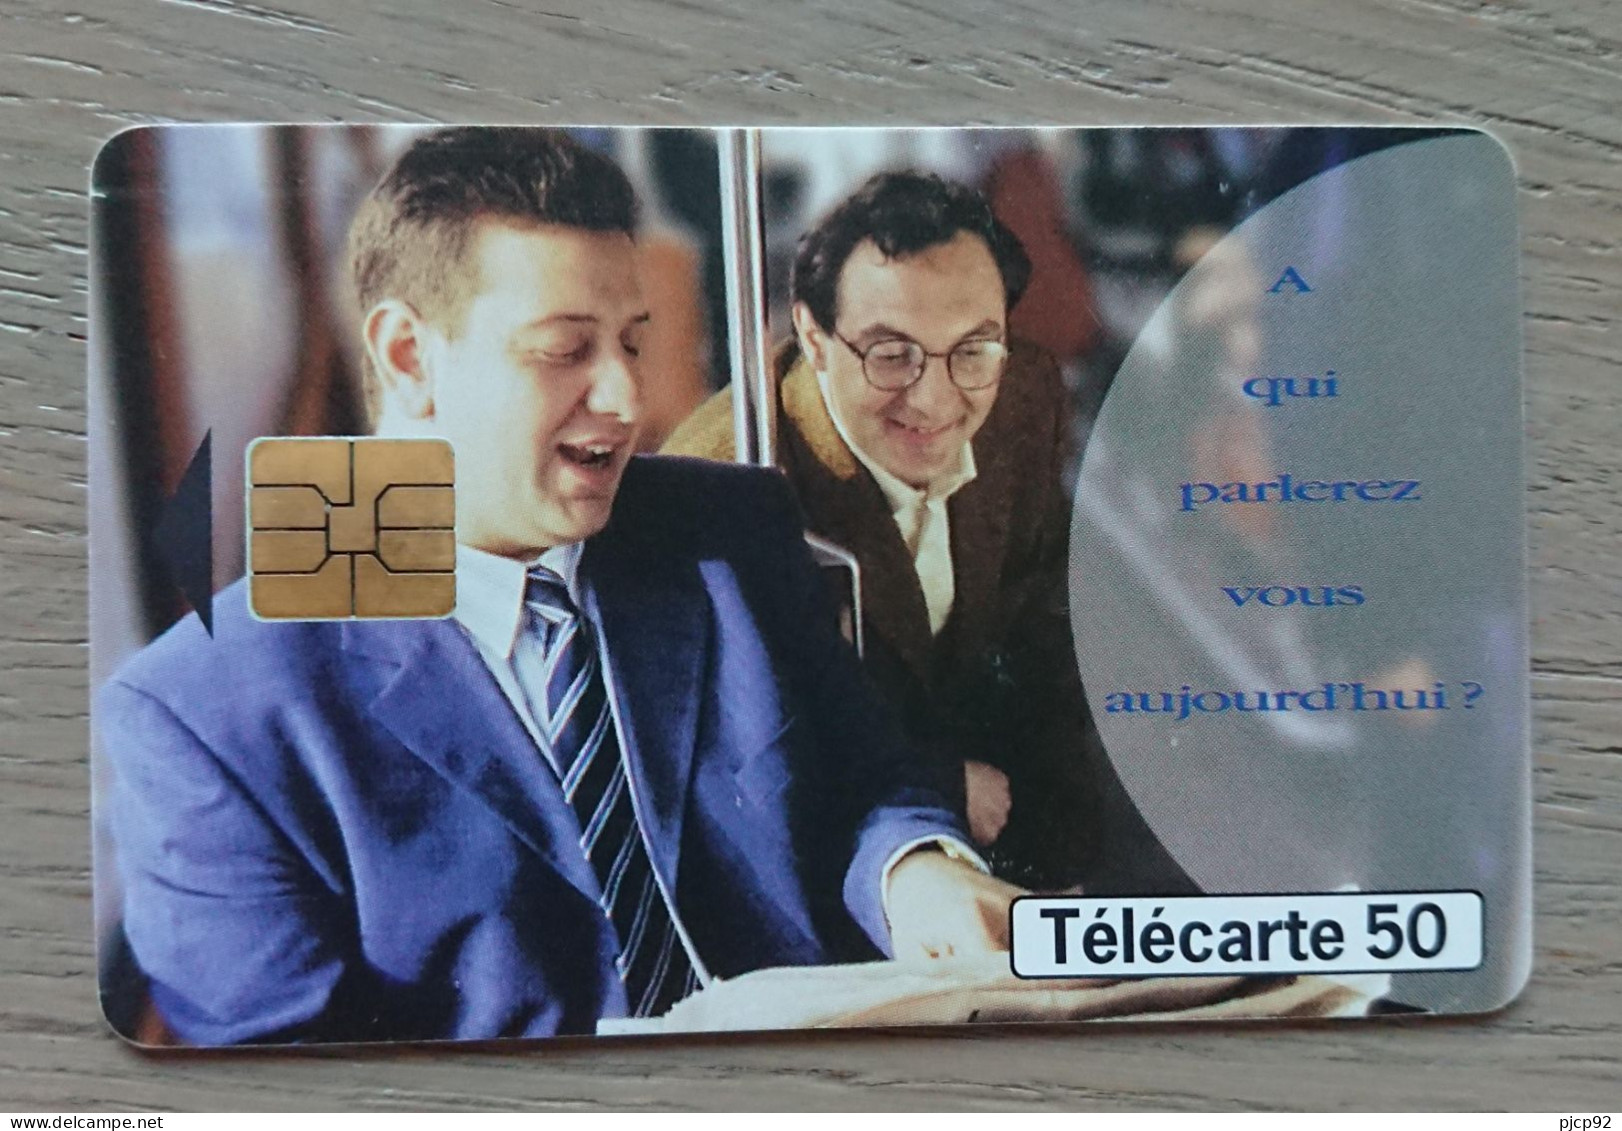 France - 1998 - Télécarte 50 Unités -  A Qui Parlez-vous Aujourd'hui ? - 1998